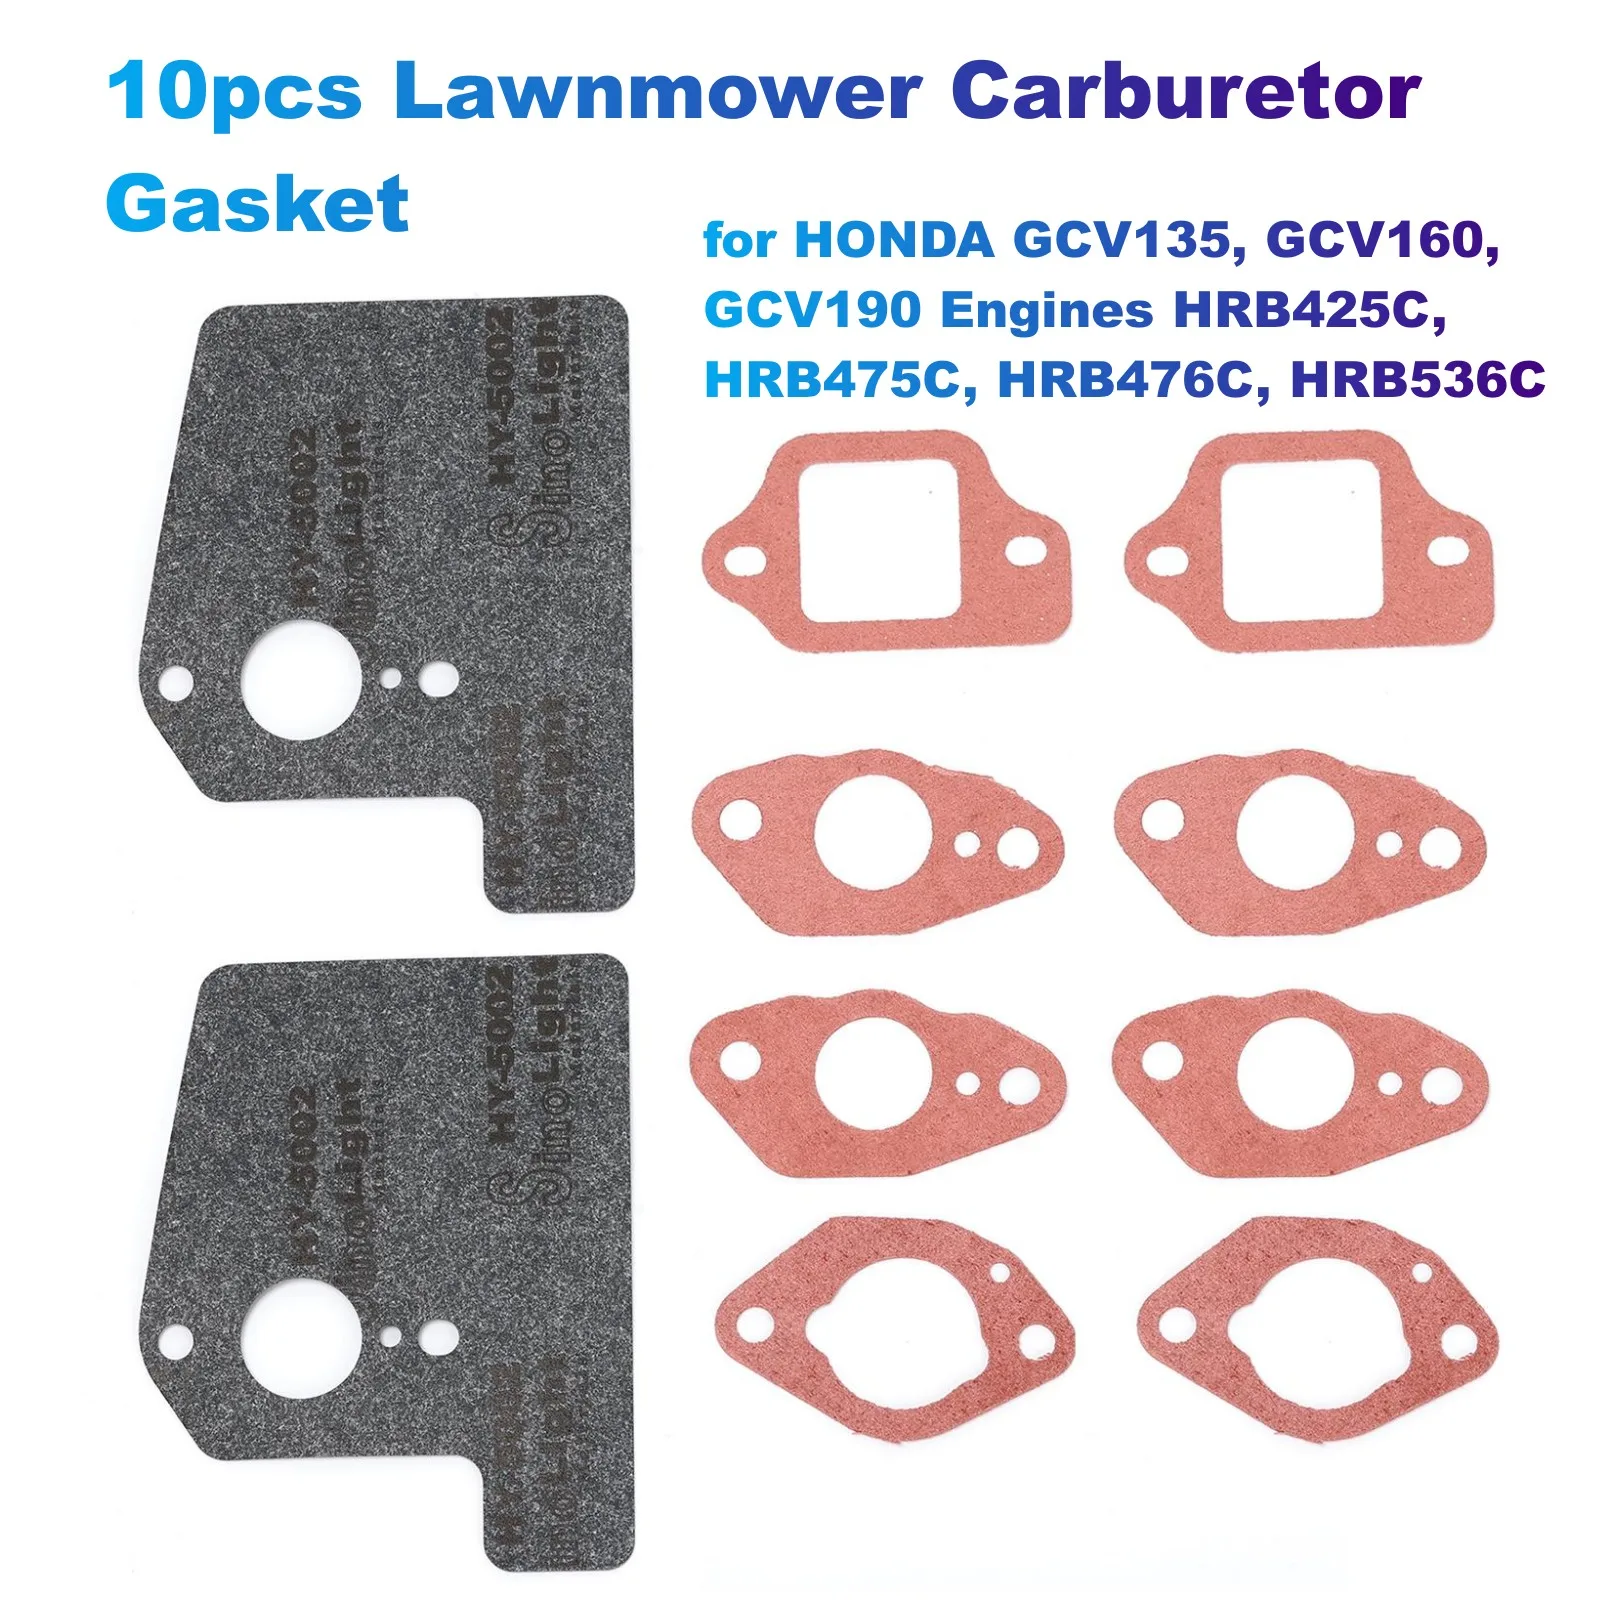 10pcs Lawnmower Carburetor Gasket for HONDA GCV135, GCV160, GCV190 Engines HRB425C, HRB475C, HRB476C, HRB536C (16221883800) riooak new 10pcs original pcf7938xa id47 blank car for honda kia key auto transponder chip